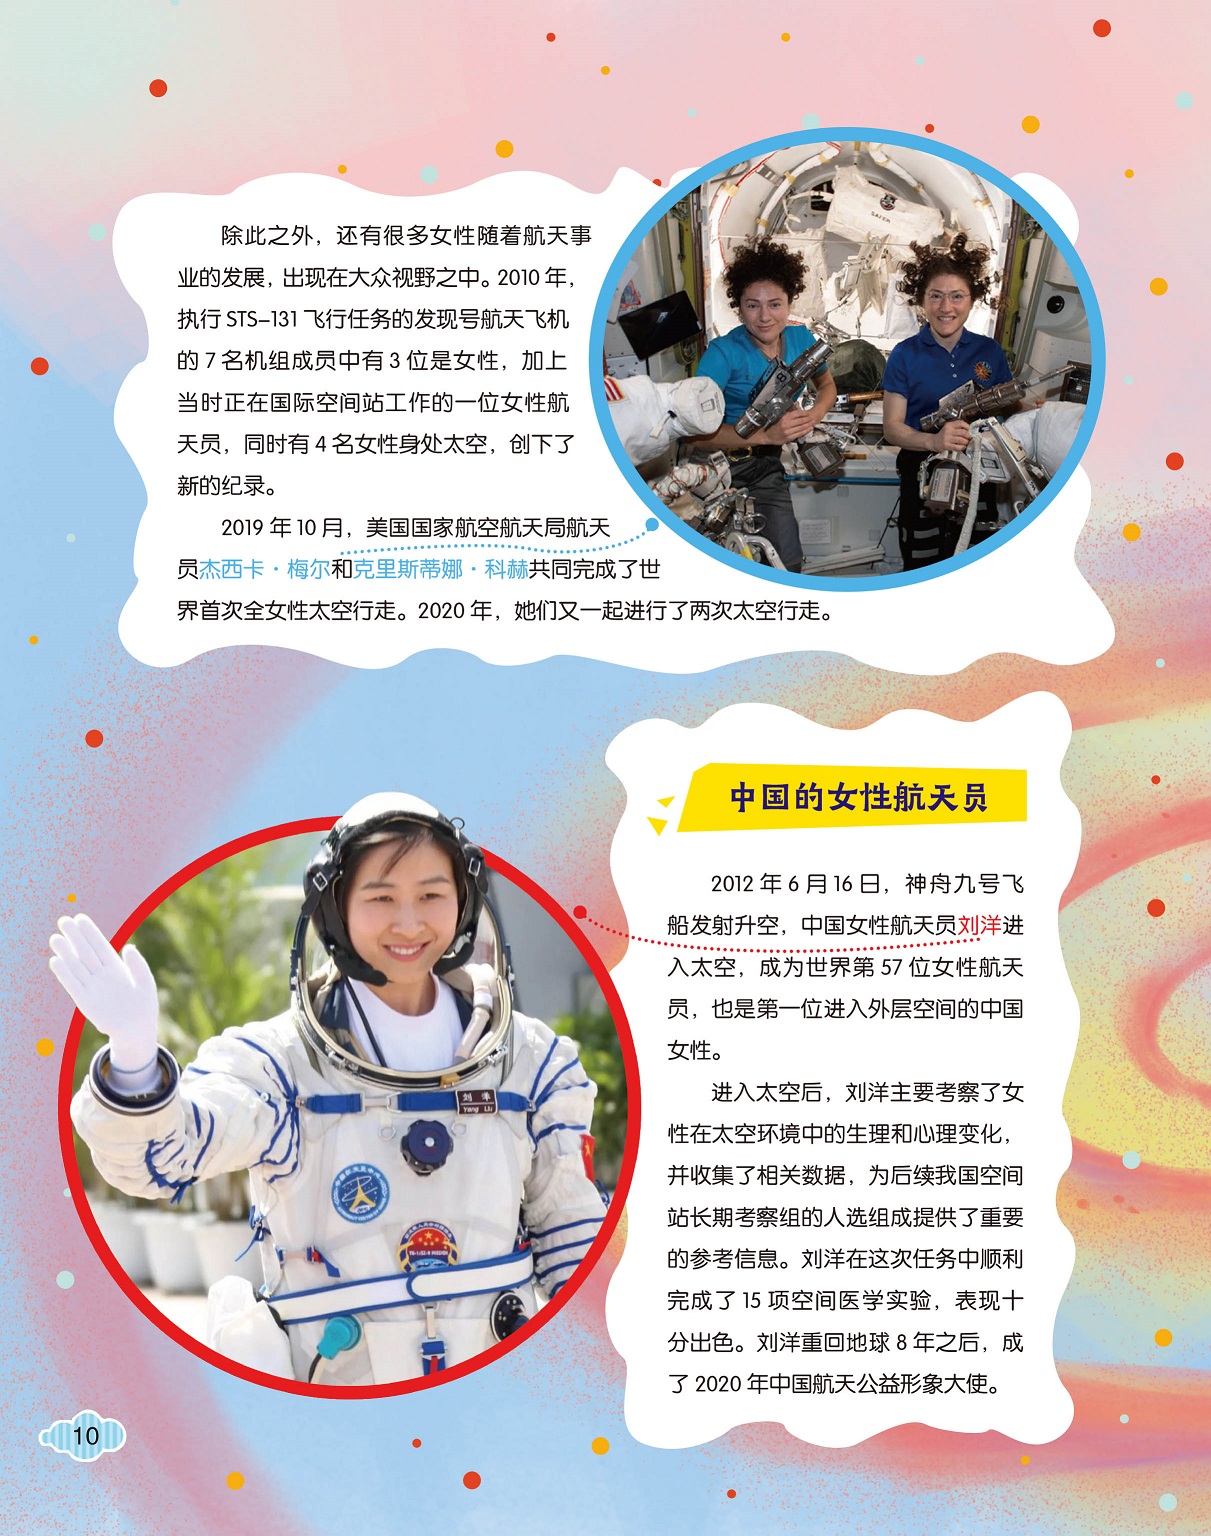 中国的女性航天员,刘洋成为中国航天公益形象大使